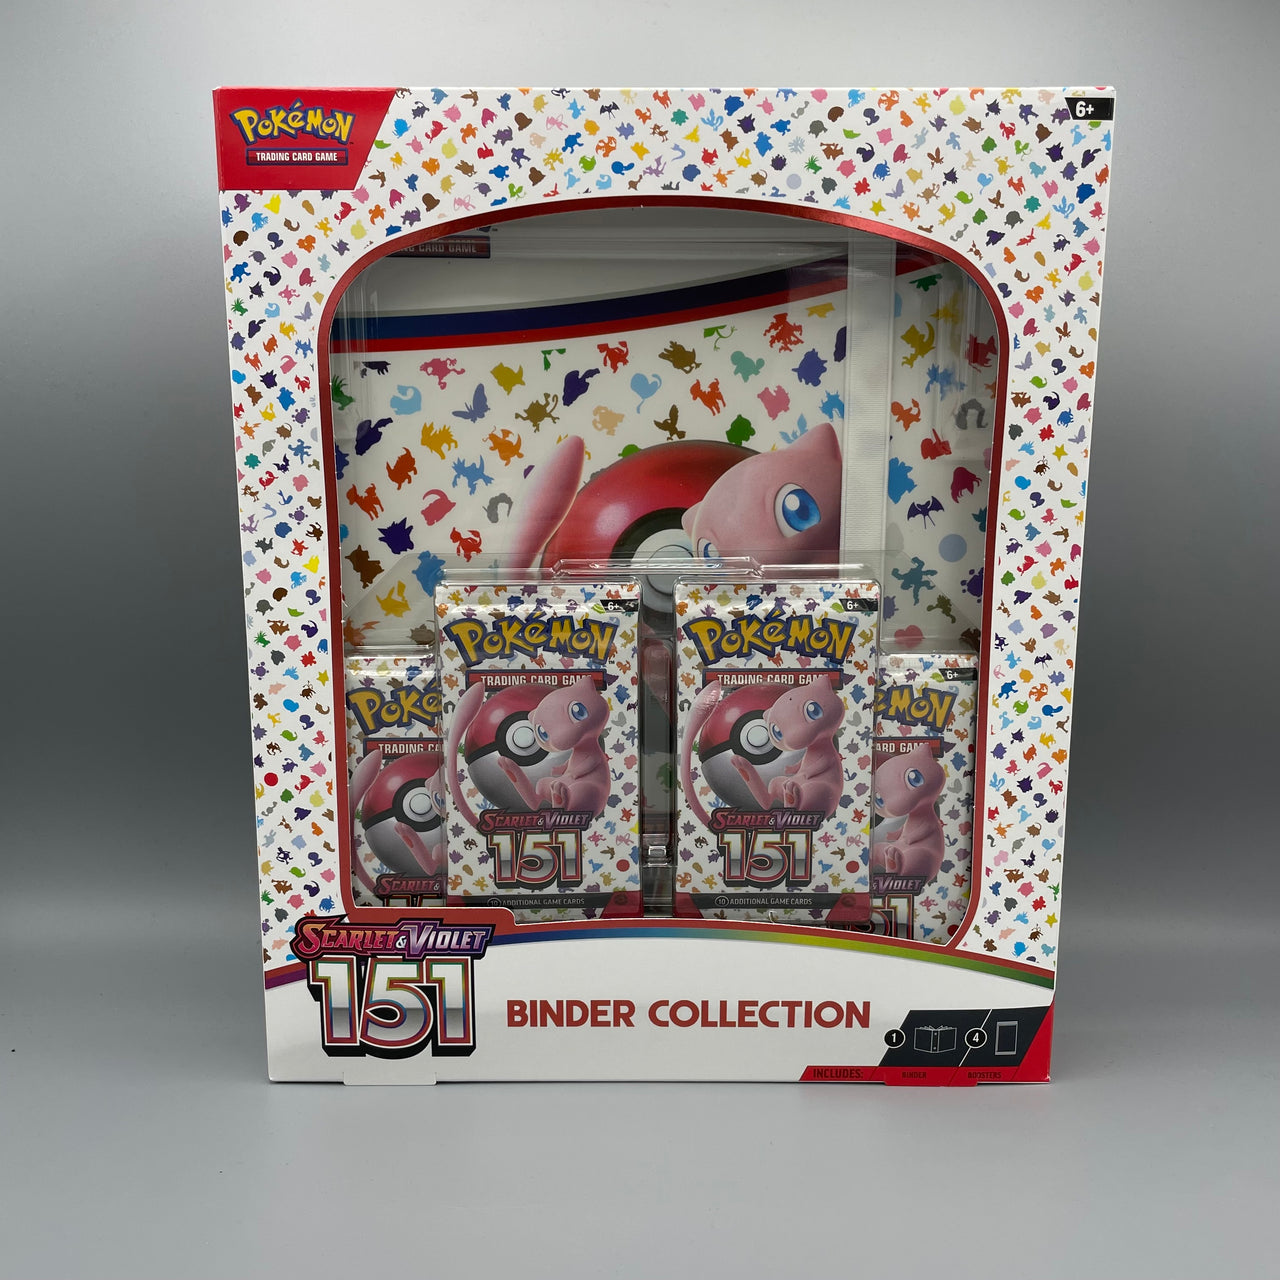 Pokémon Binder Collection Pokémon 151 - Englisch